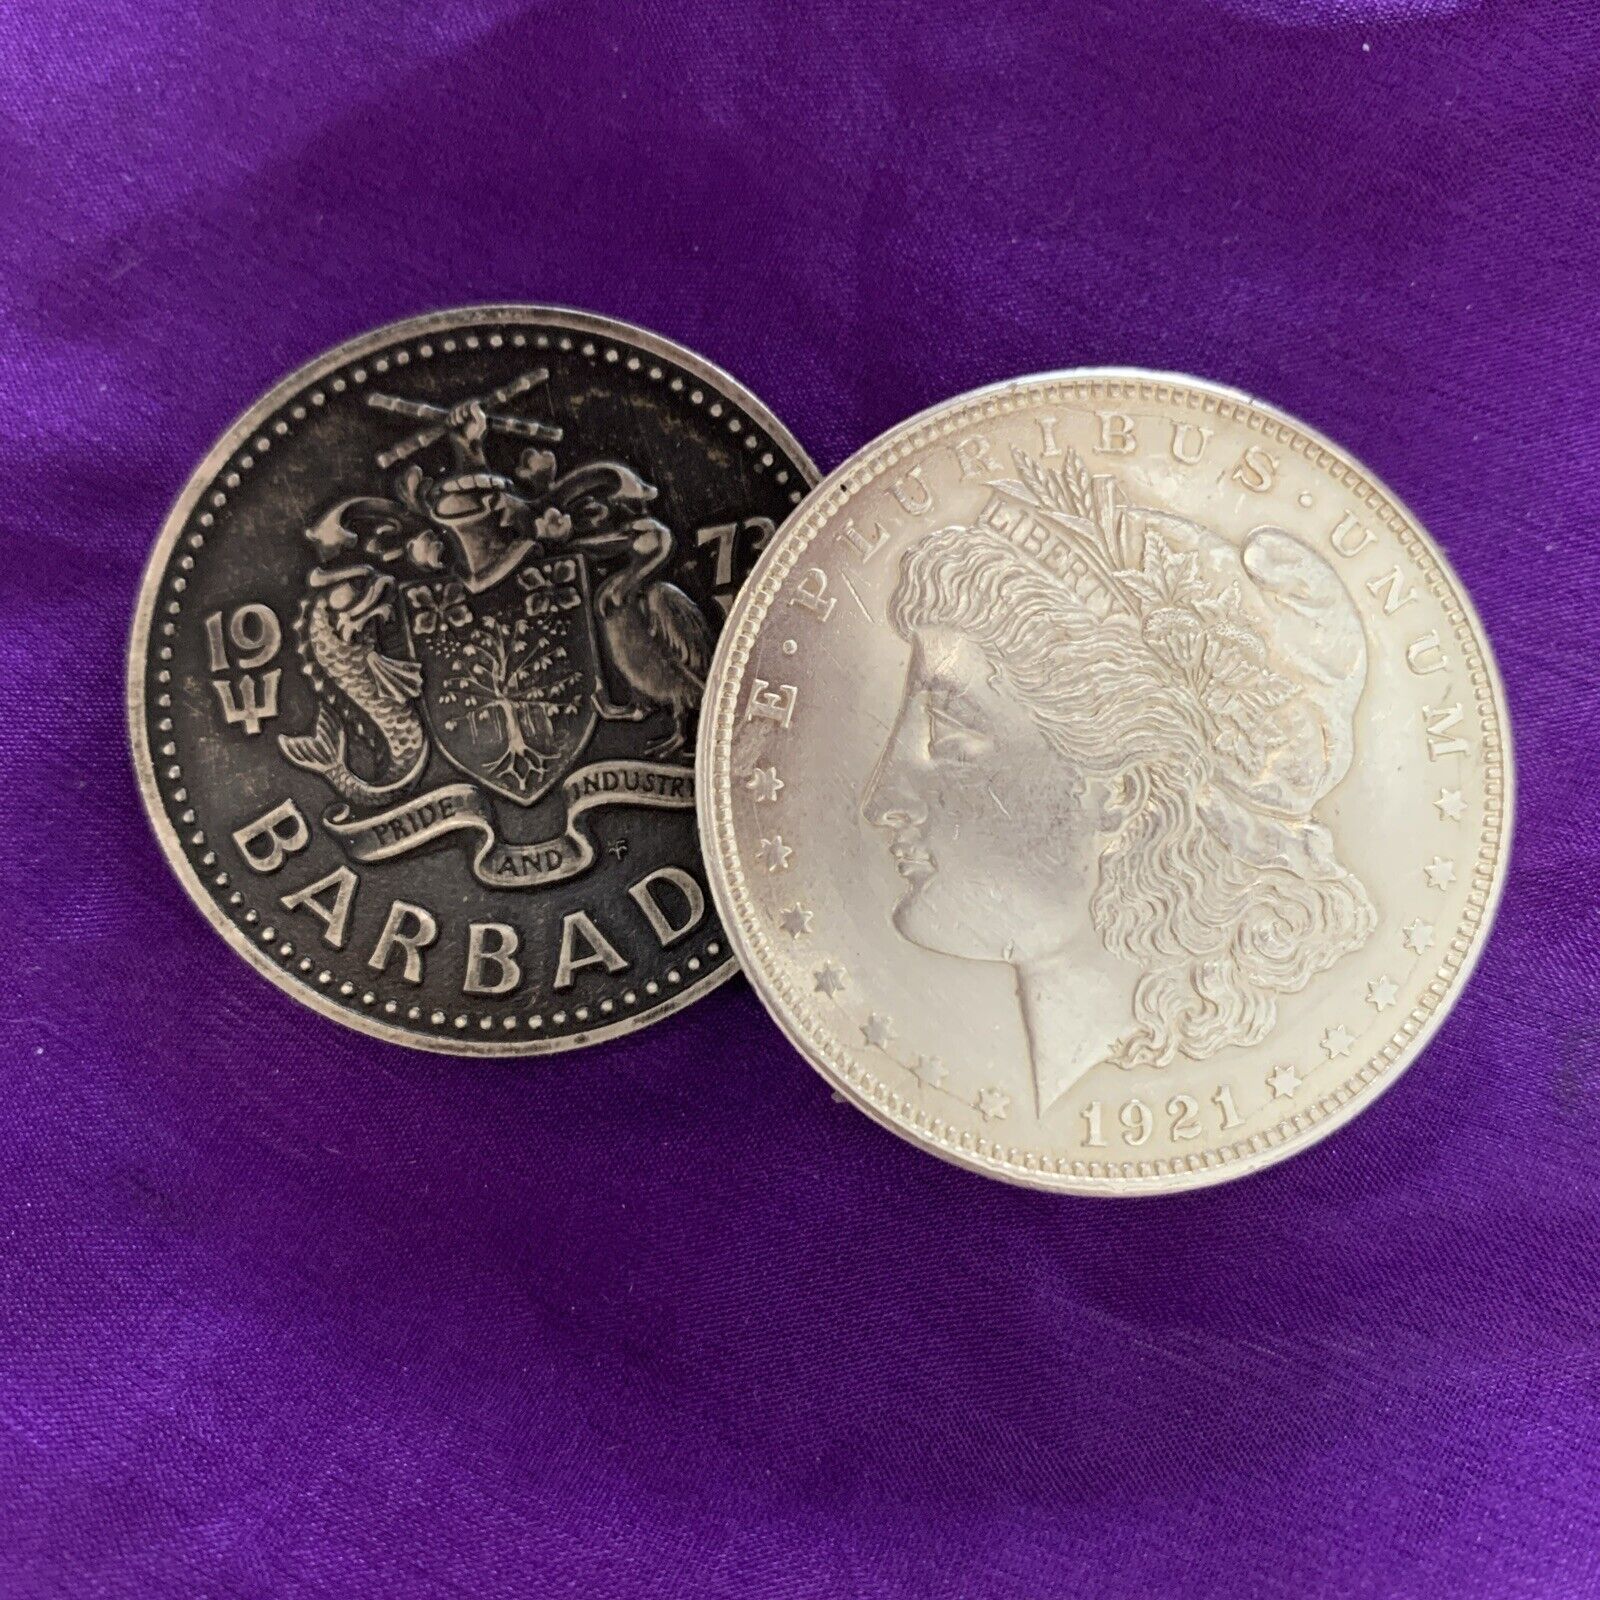 Real Silver Morgan Shim Shell Coin & $2.00 Barbados Coin . Non Expanded .